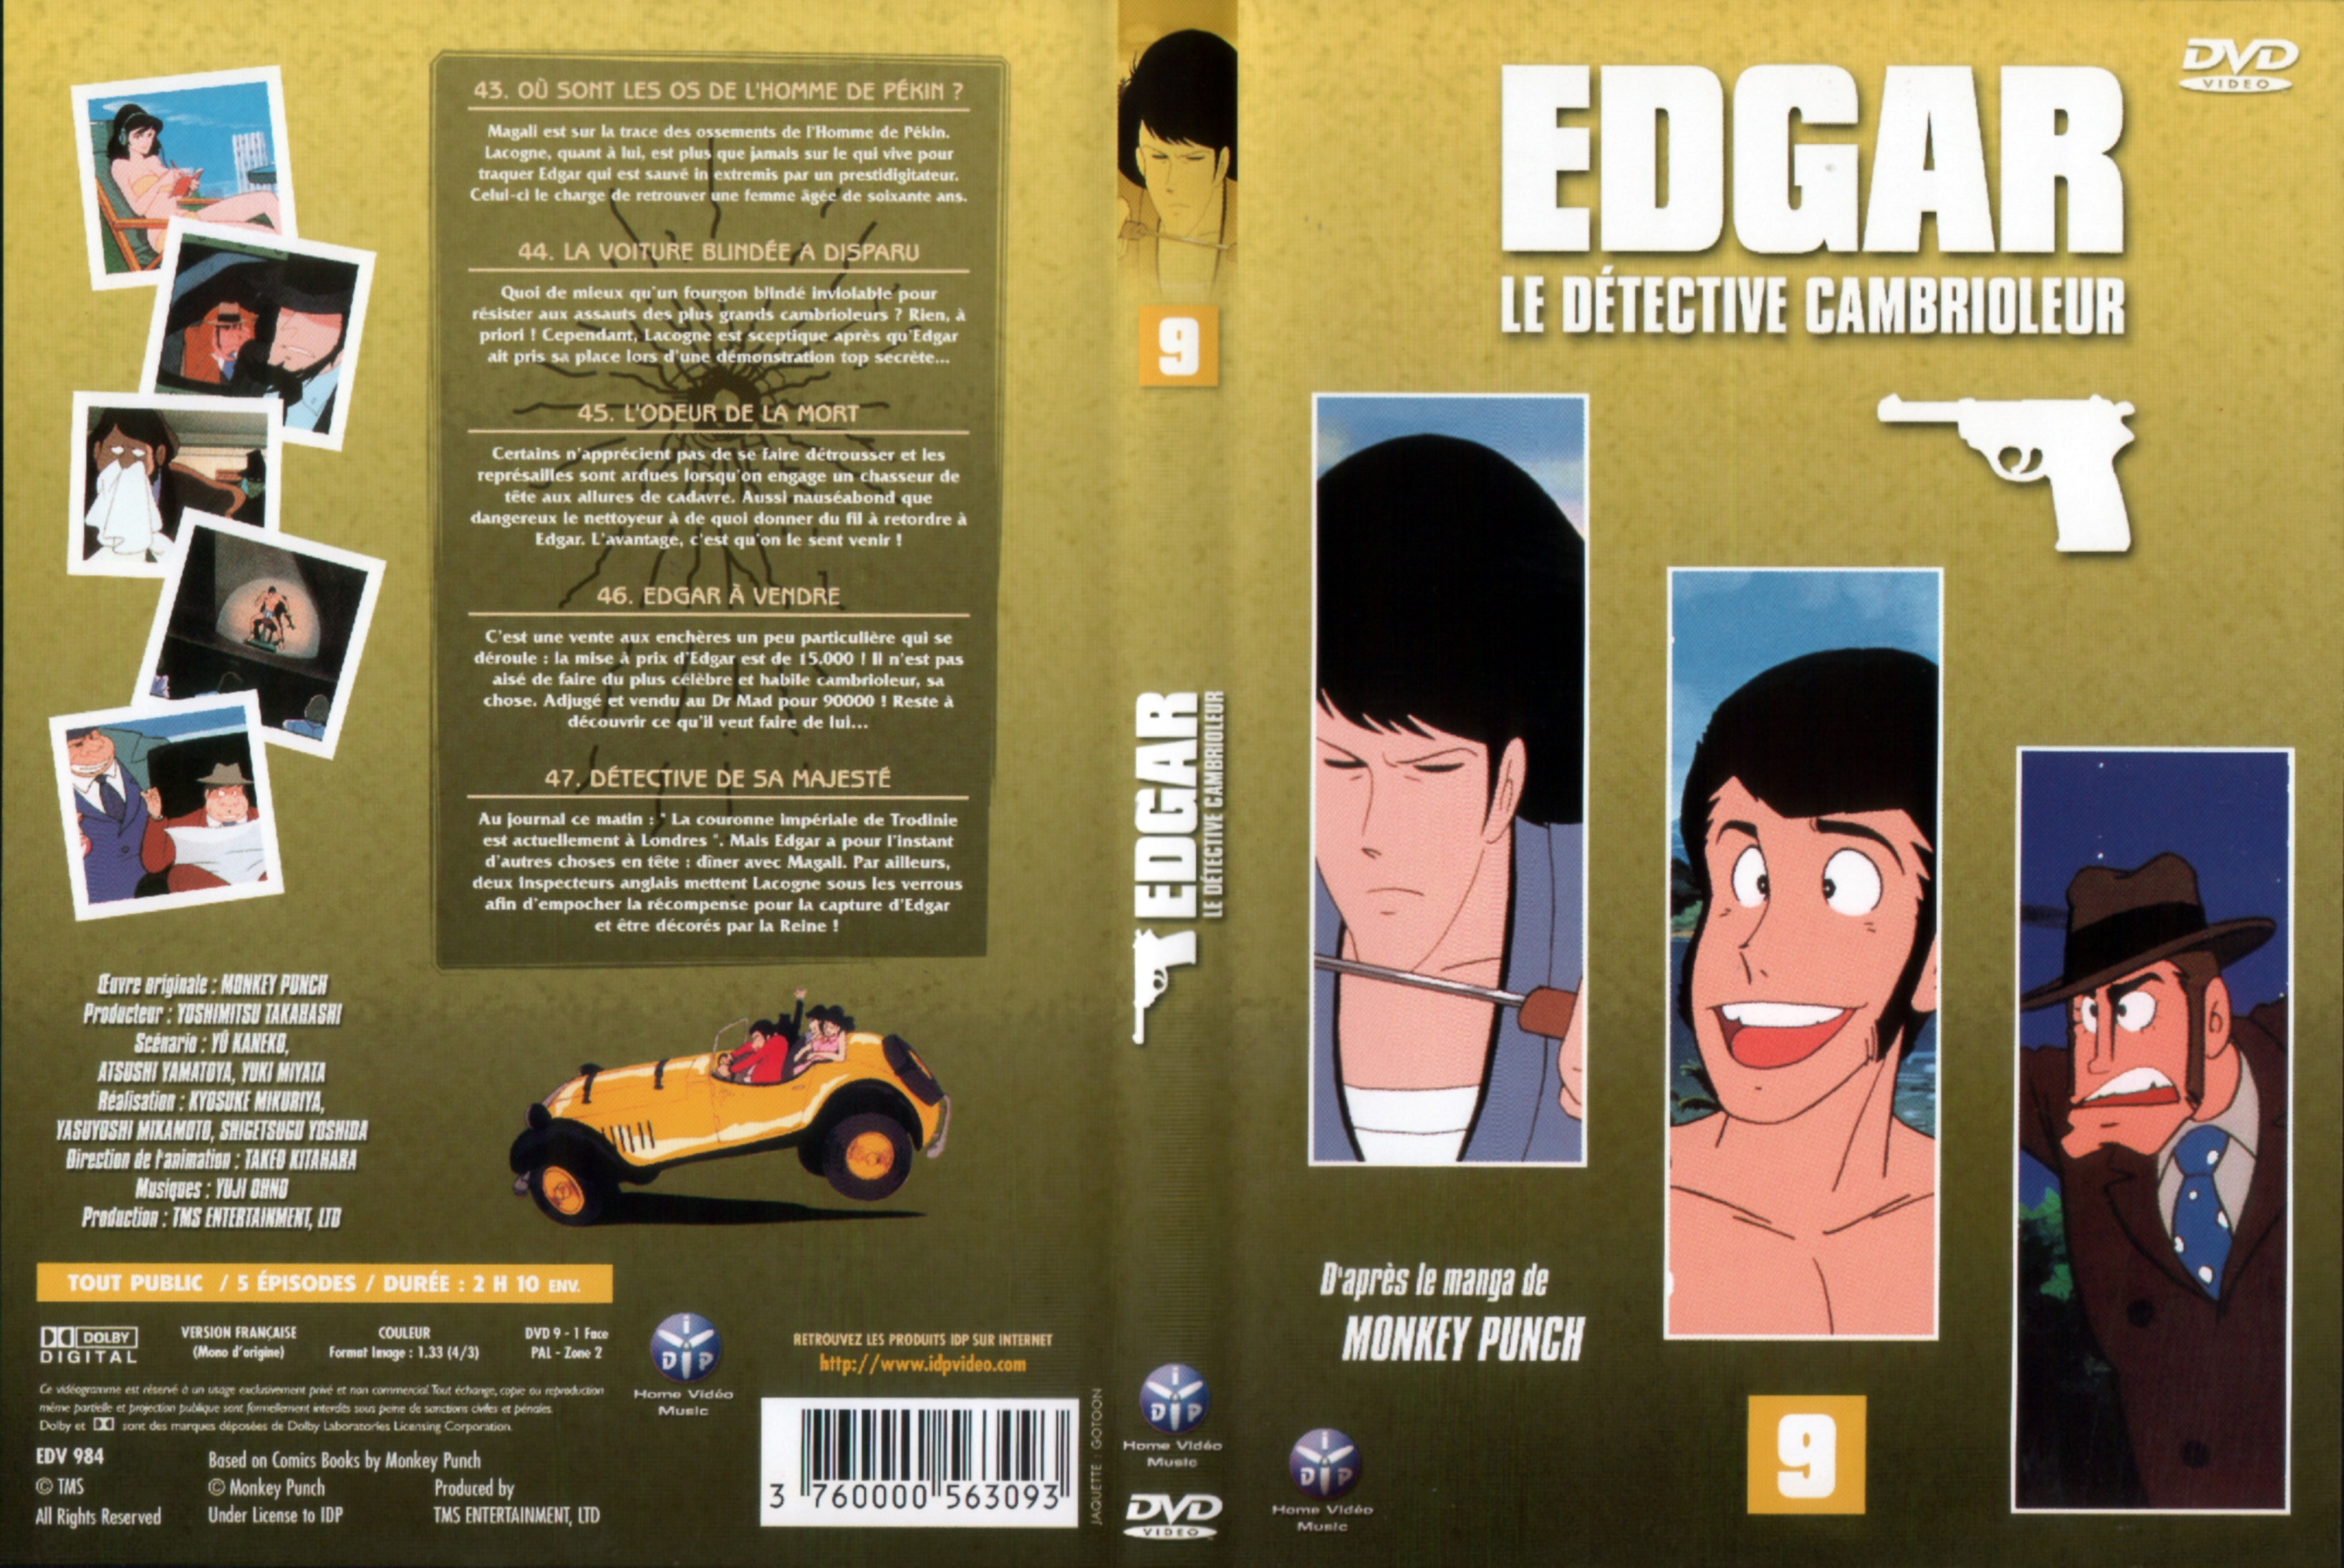 Jaquette DVD Edgar le detective cambrioleur DVD 09